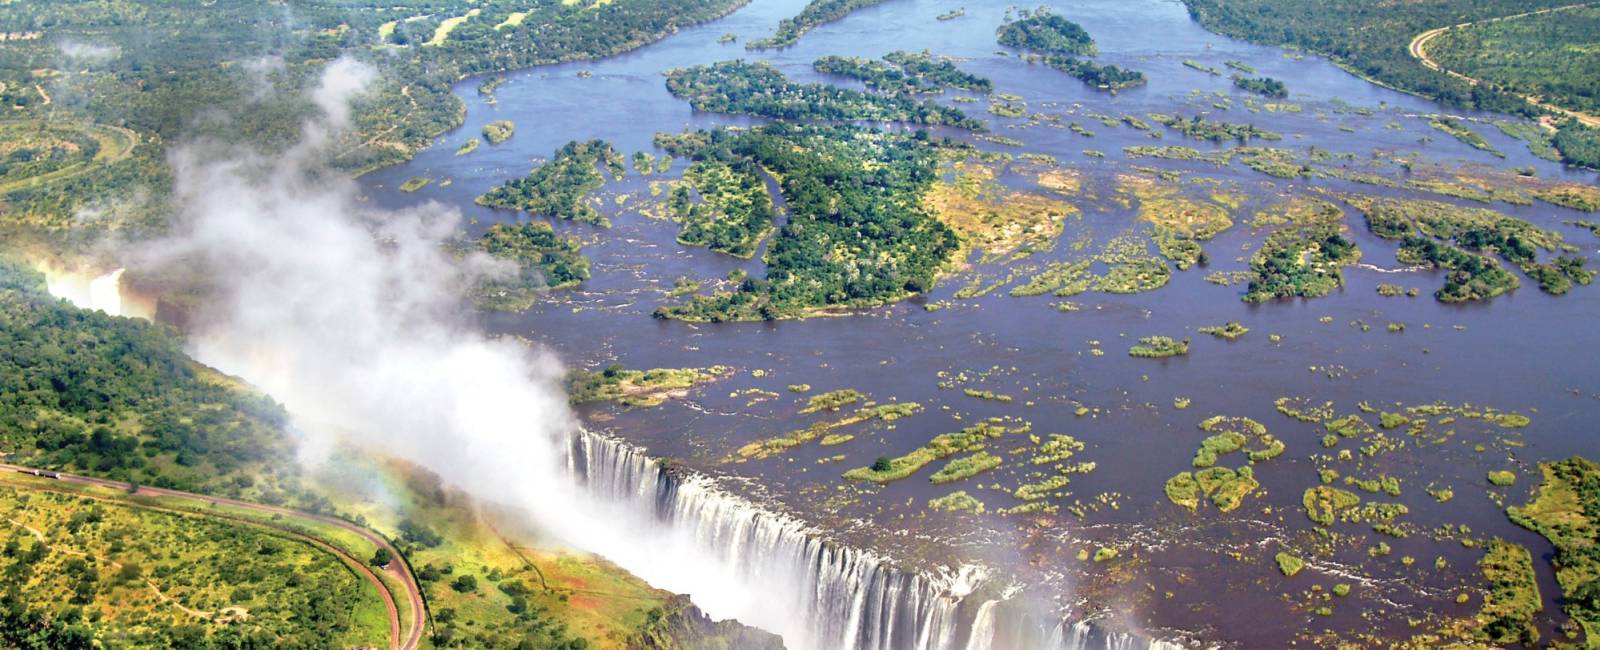 Vy över forsande Victoriafallen och regnbåge, Zimbabwe